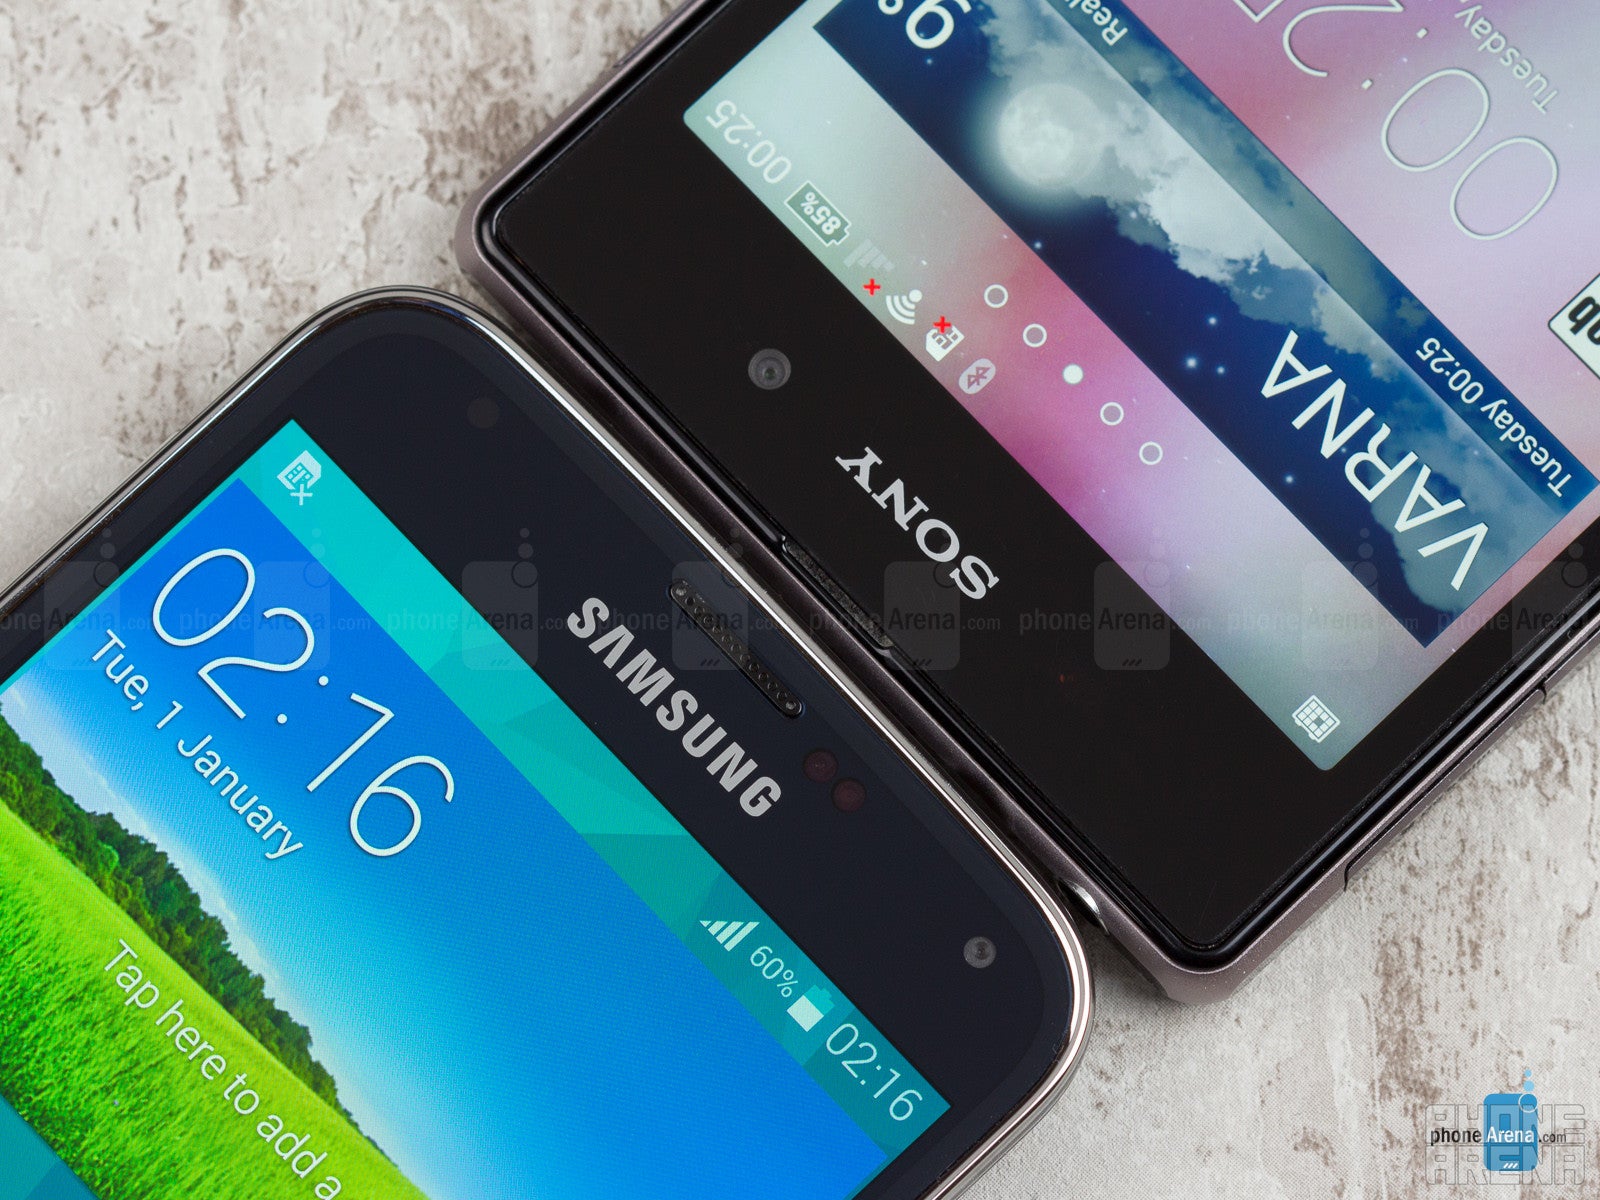 Samsung Galaxy S5 vs Sony Xperia Z1